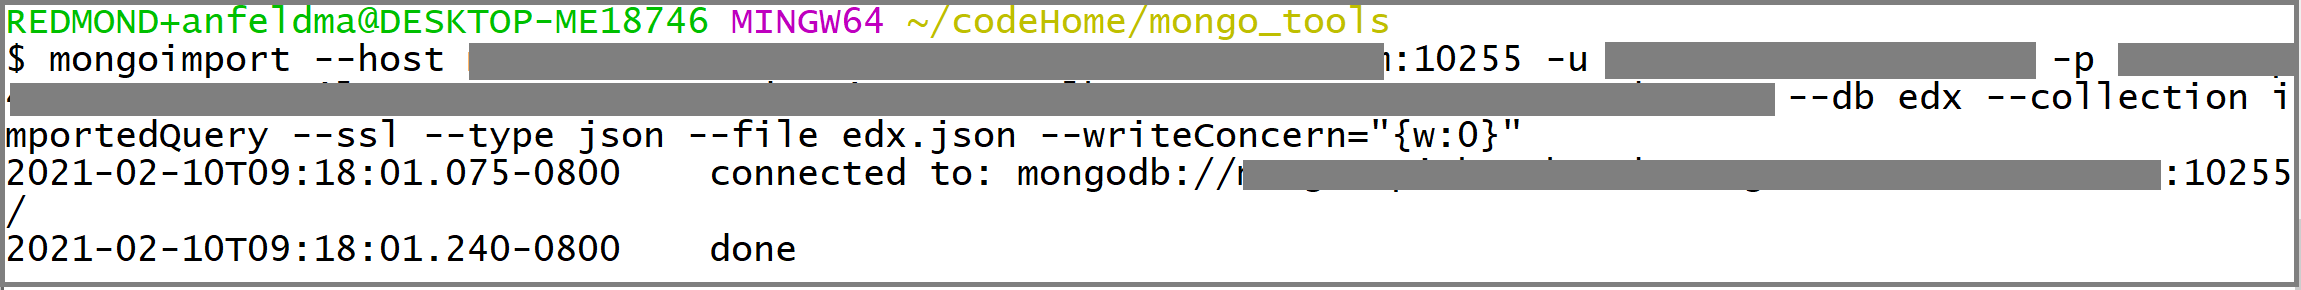 mongoimport 调用的屏幕截图。